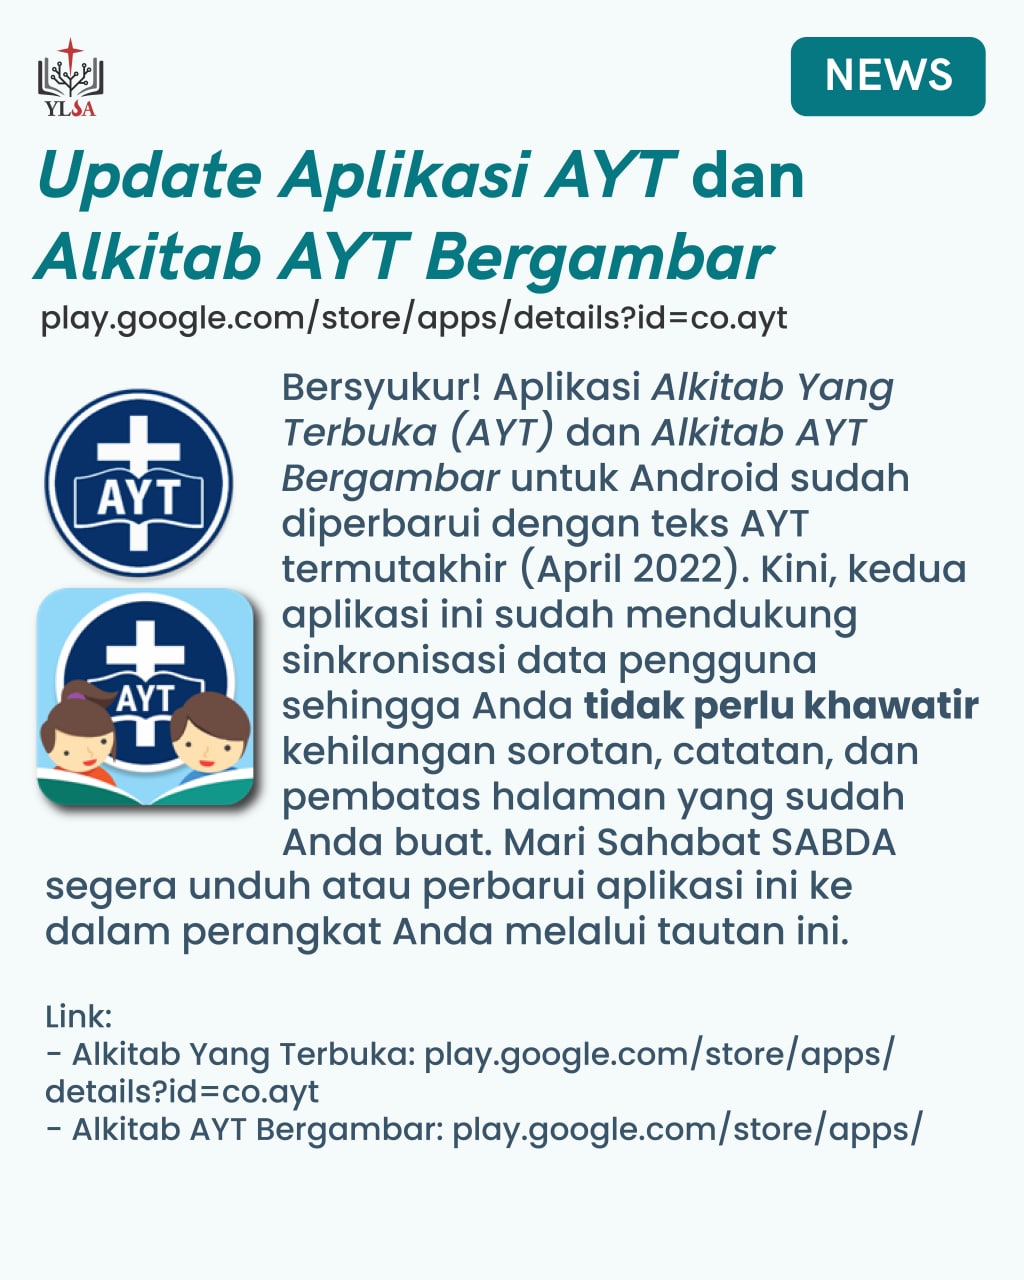 Aplikasi Alkitab Yang Terbuka (AYT) dan Alkitab AYT Bergambar untuk Android sudah diperbarui dengan teks AYT termutakhir (April 2022).